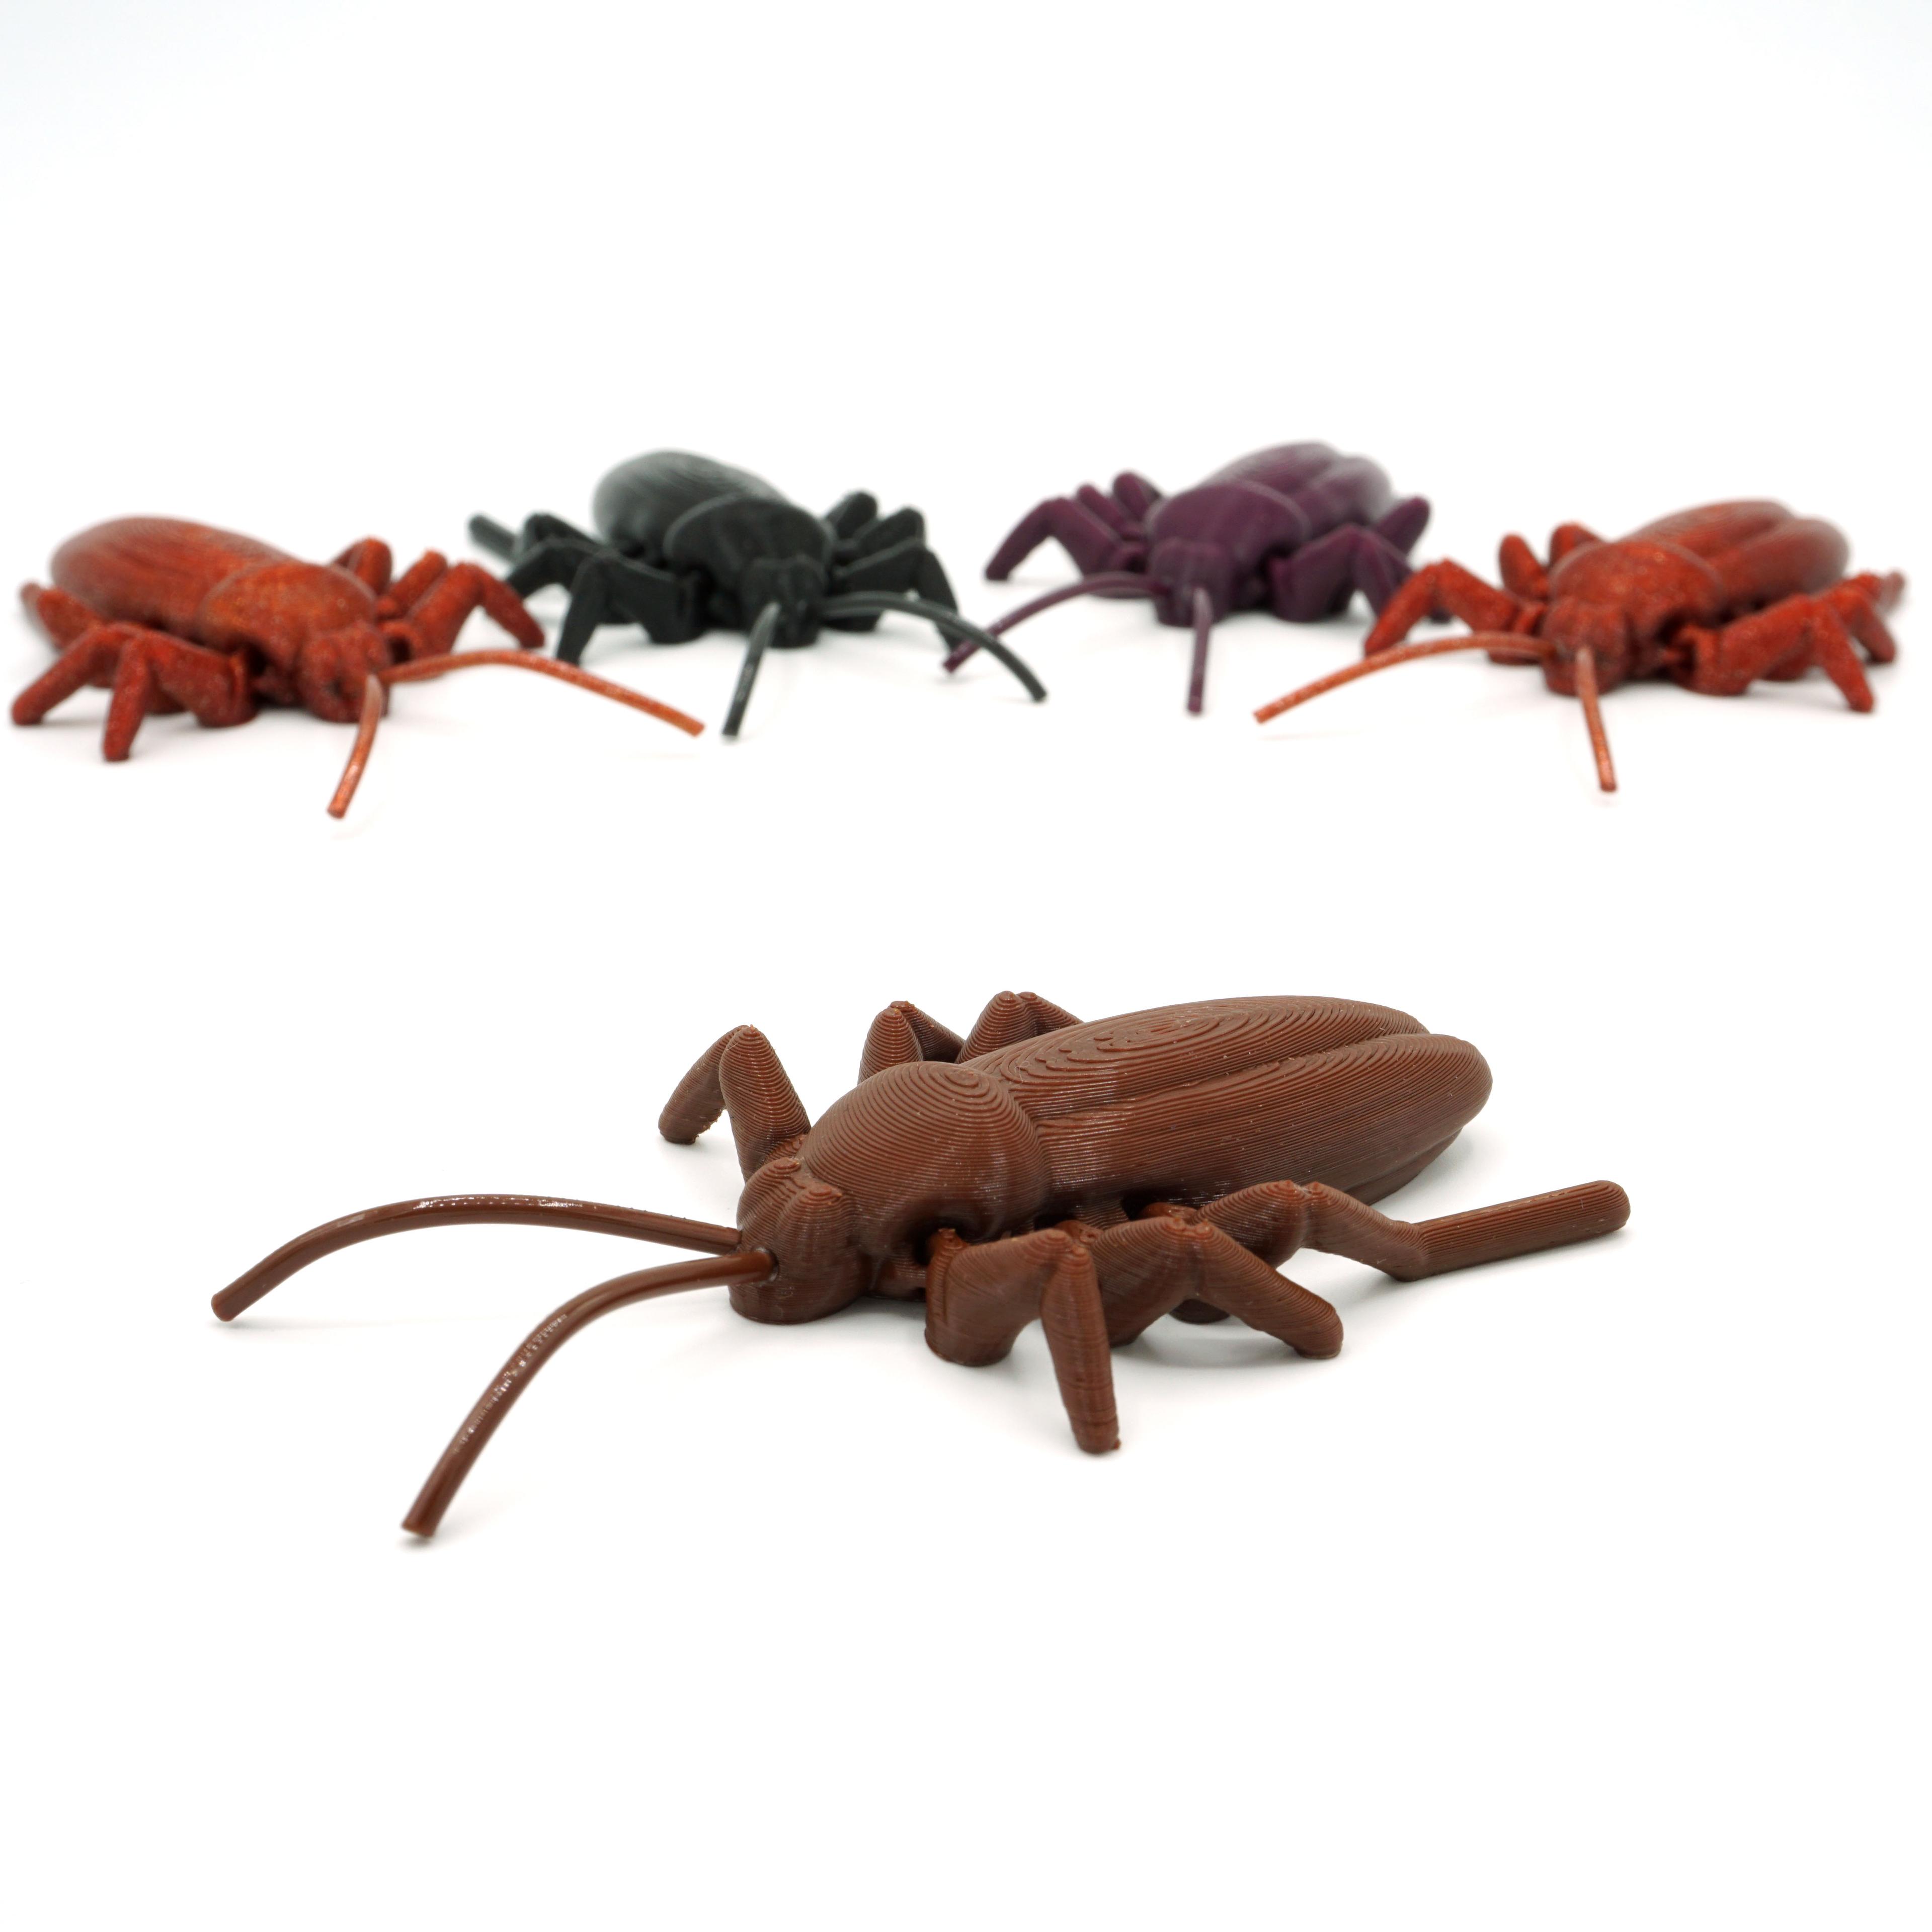 Articulated Roach 3d model